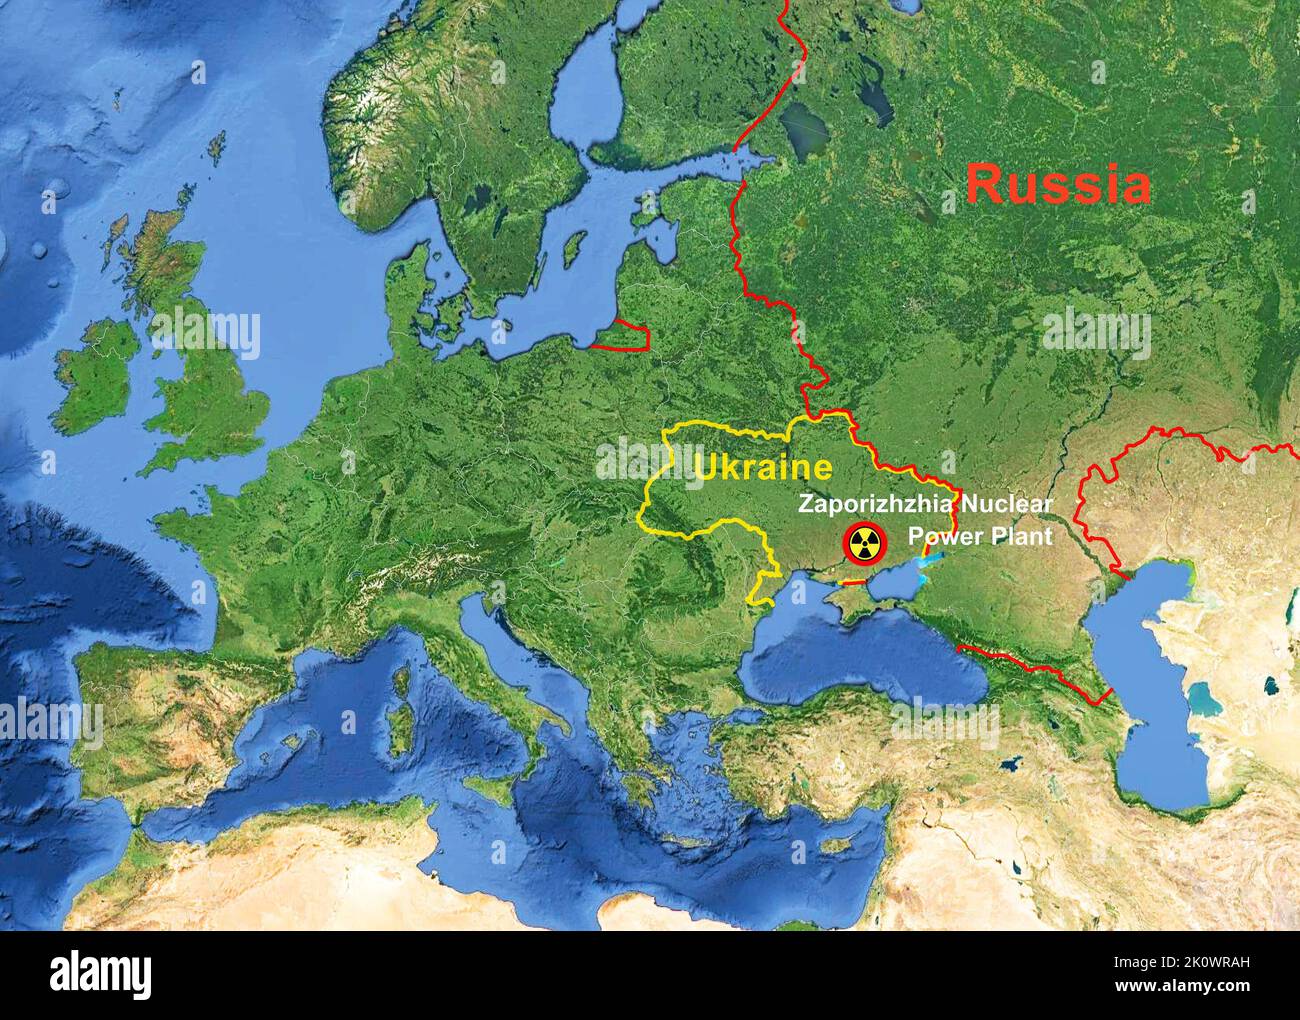 Centrale nucléaire de Zaporizhzhia en Ukraine sur la carte de l'Europe, point chaud de la guerre Russie-Ukraine. Thème de la station de Zaporizhjia, carte, frontière, crise mondiale an Banque D'Images